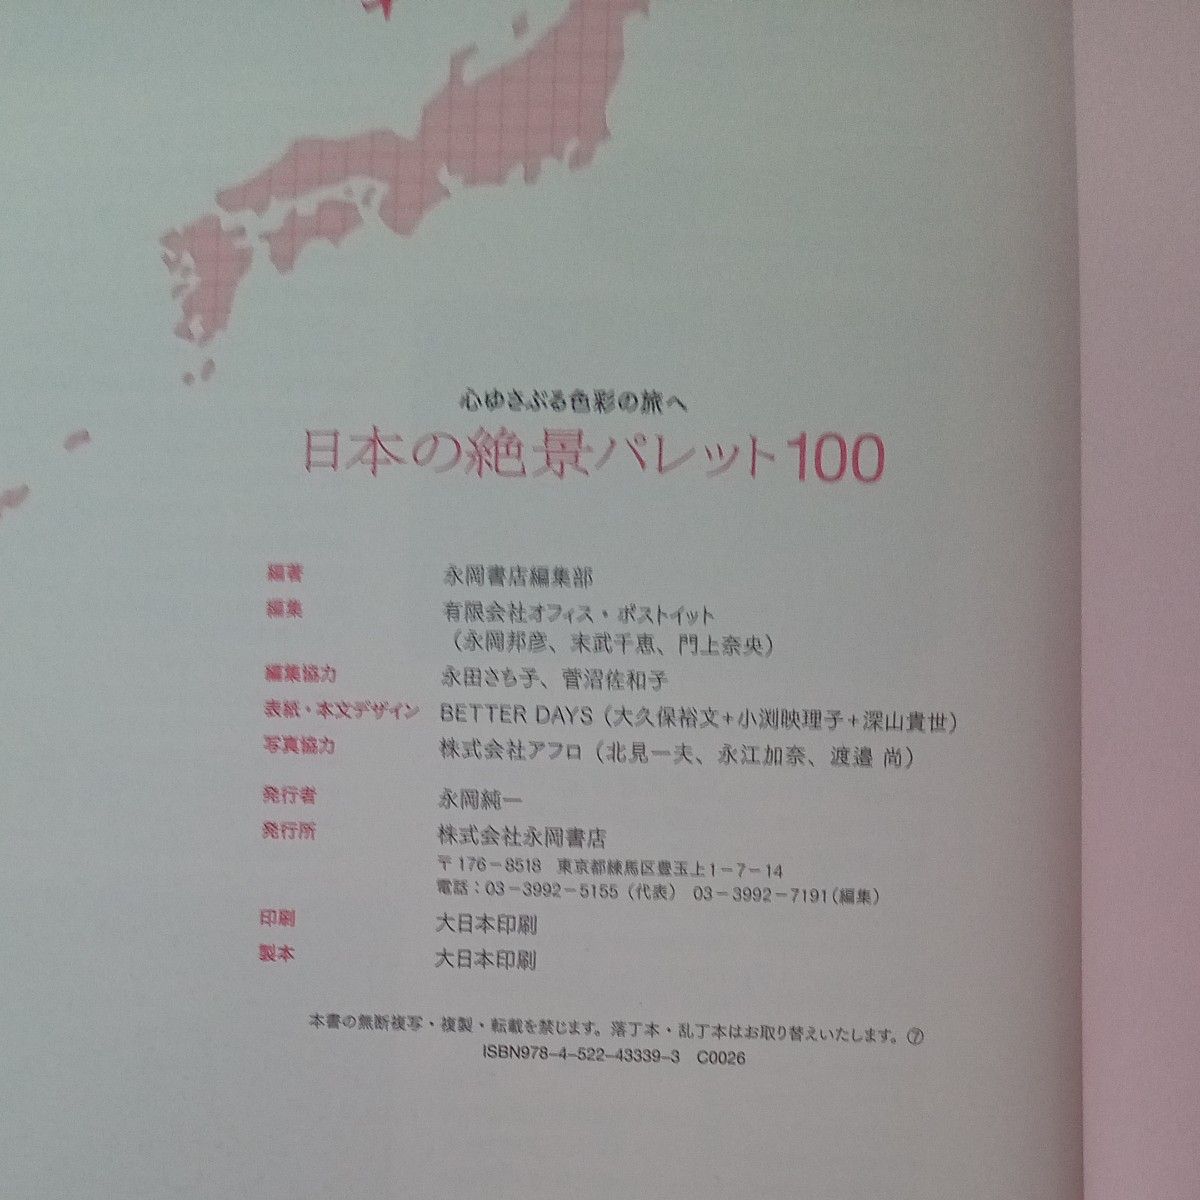 日本の絶景パレット100